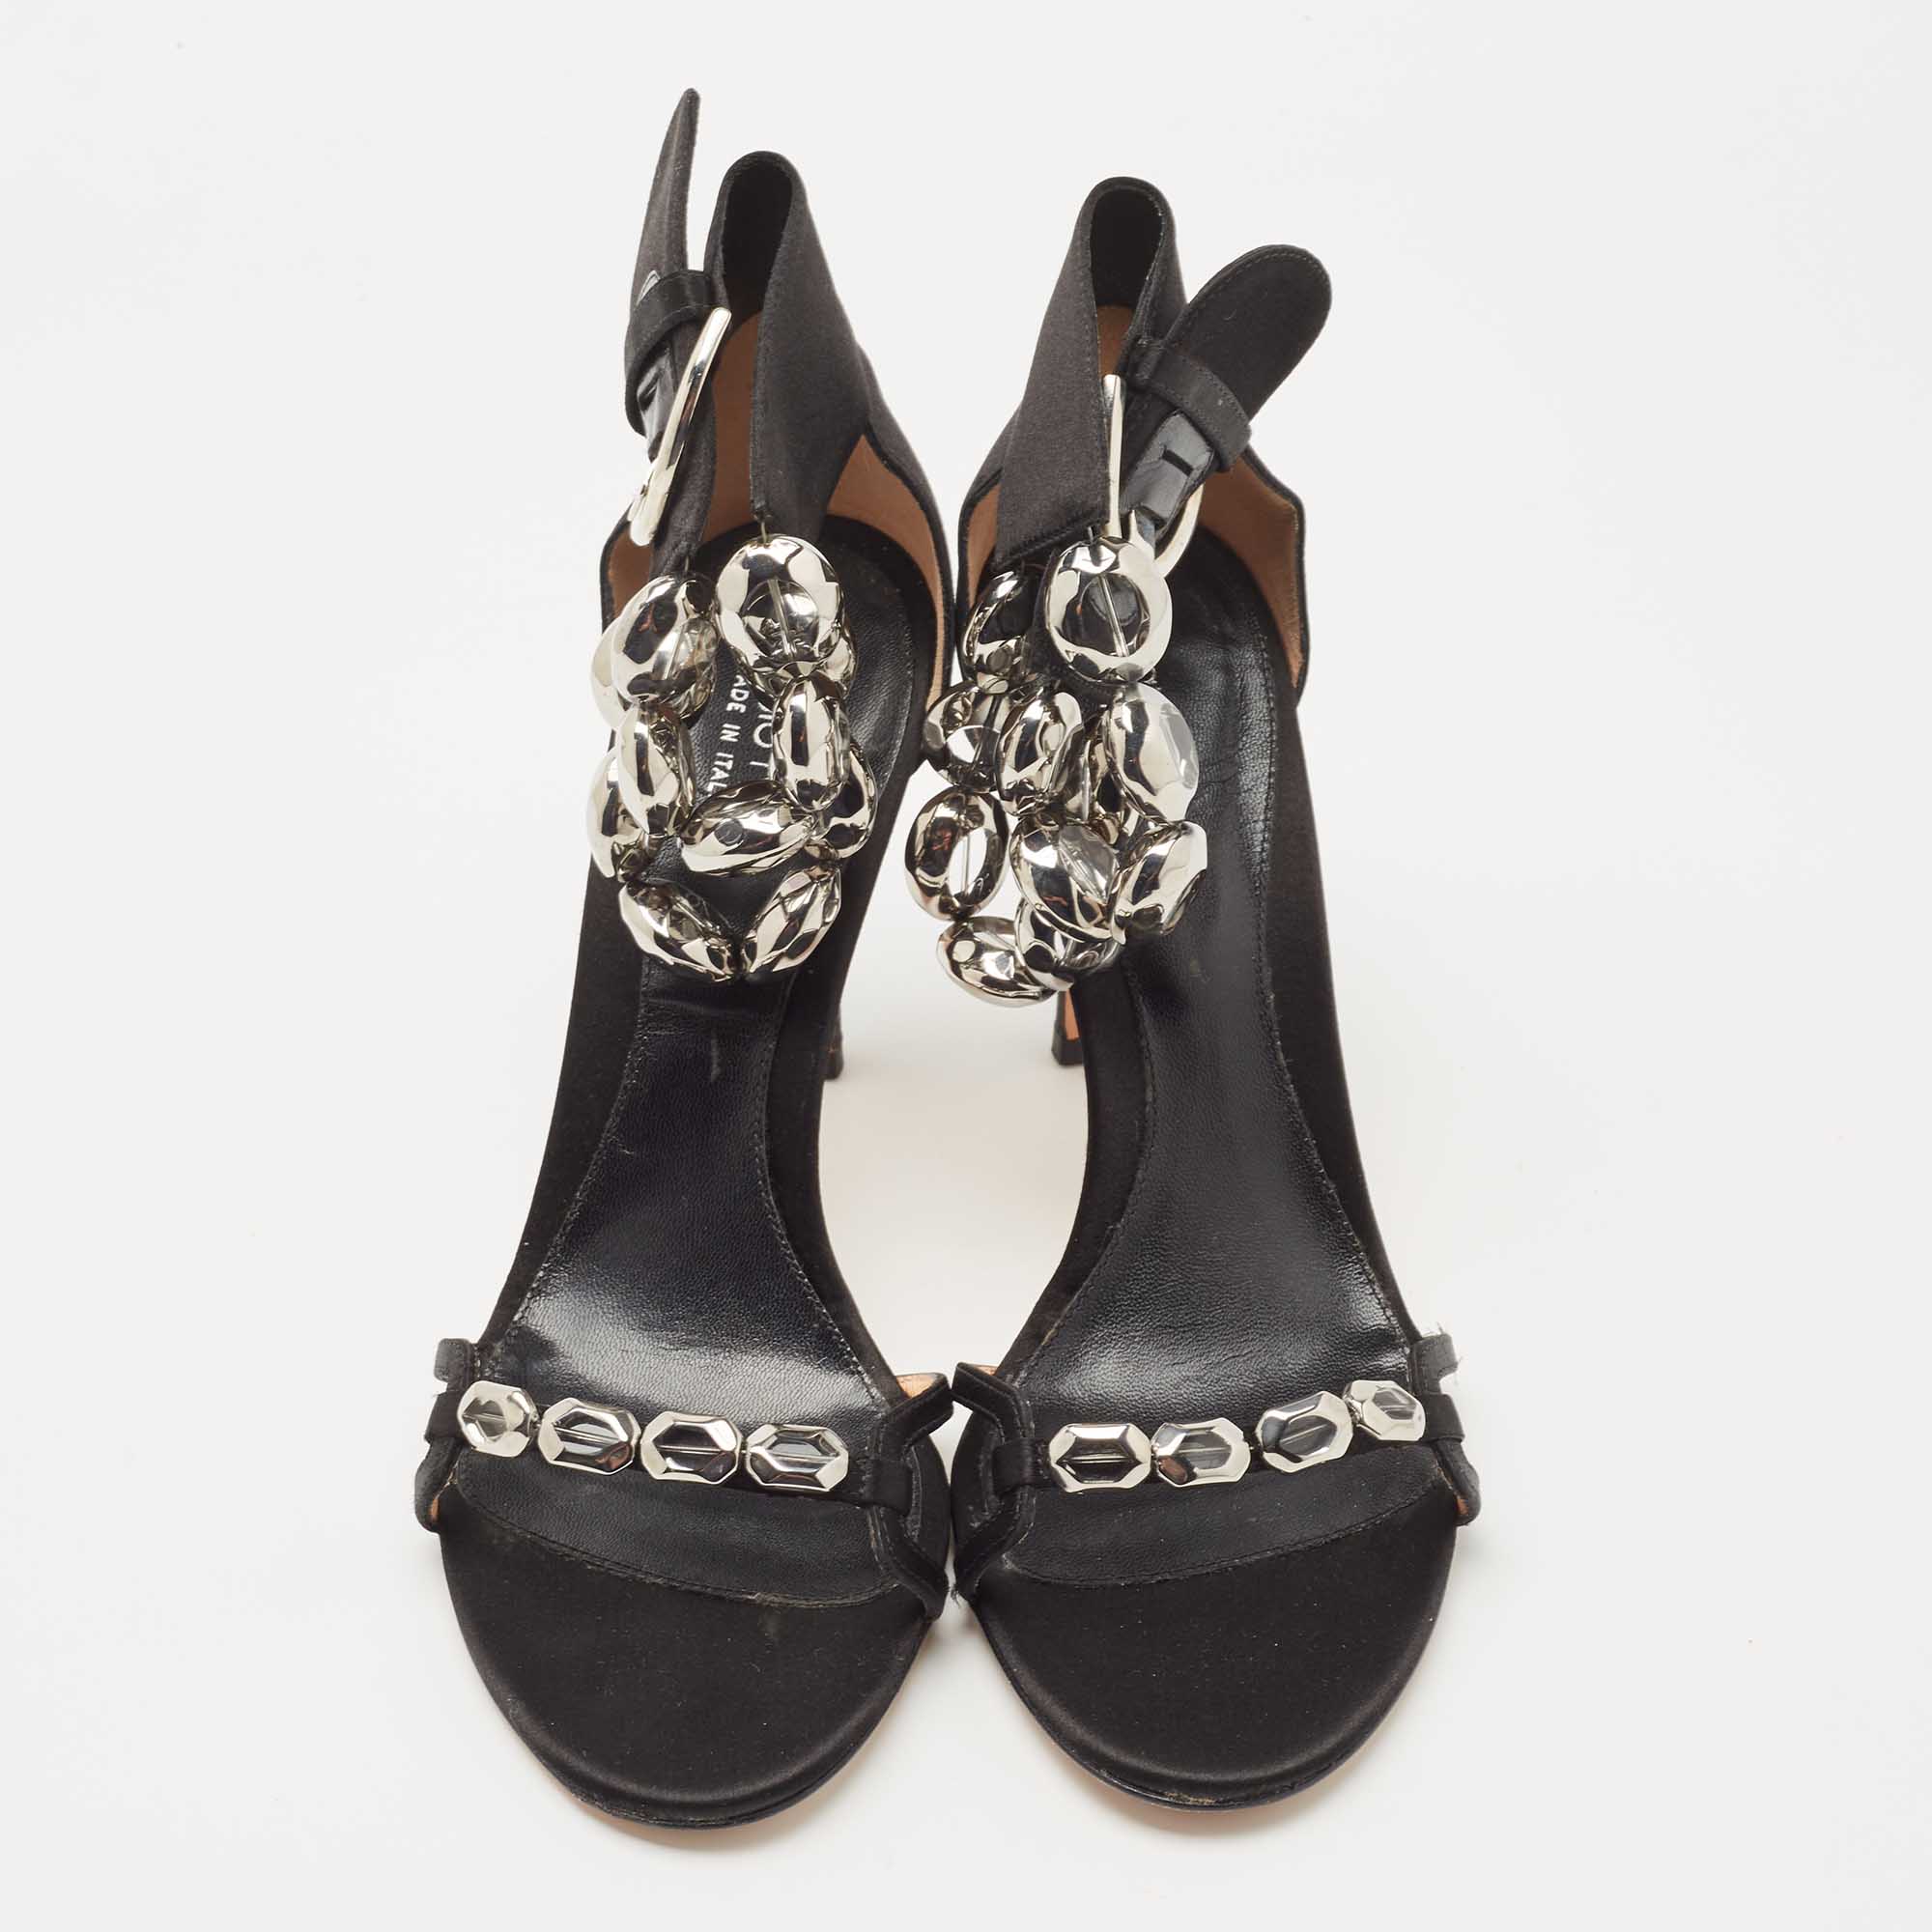 Sergio Rossi Black Satin Crystal Embellished Ankle Strap Sandals Size 38.5